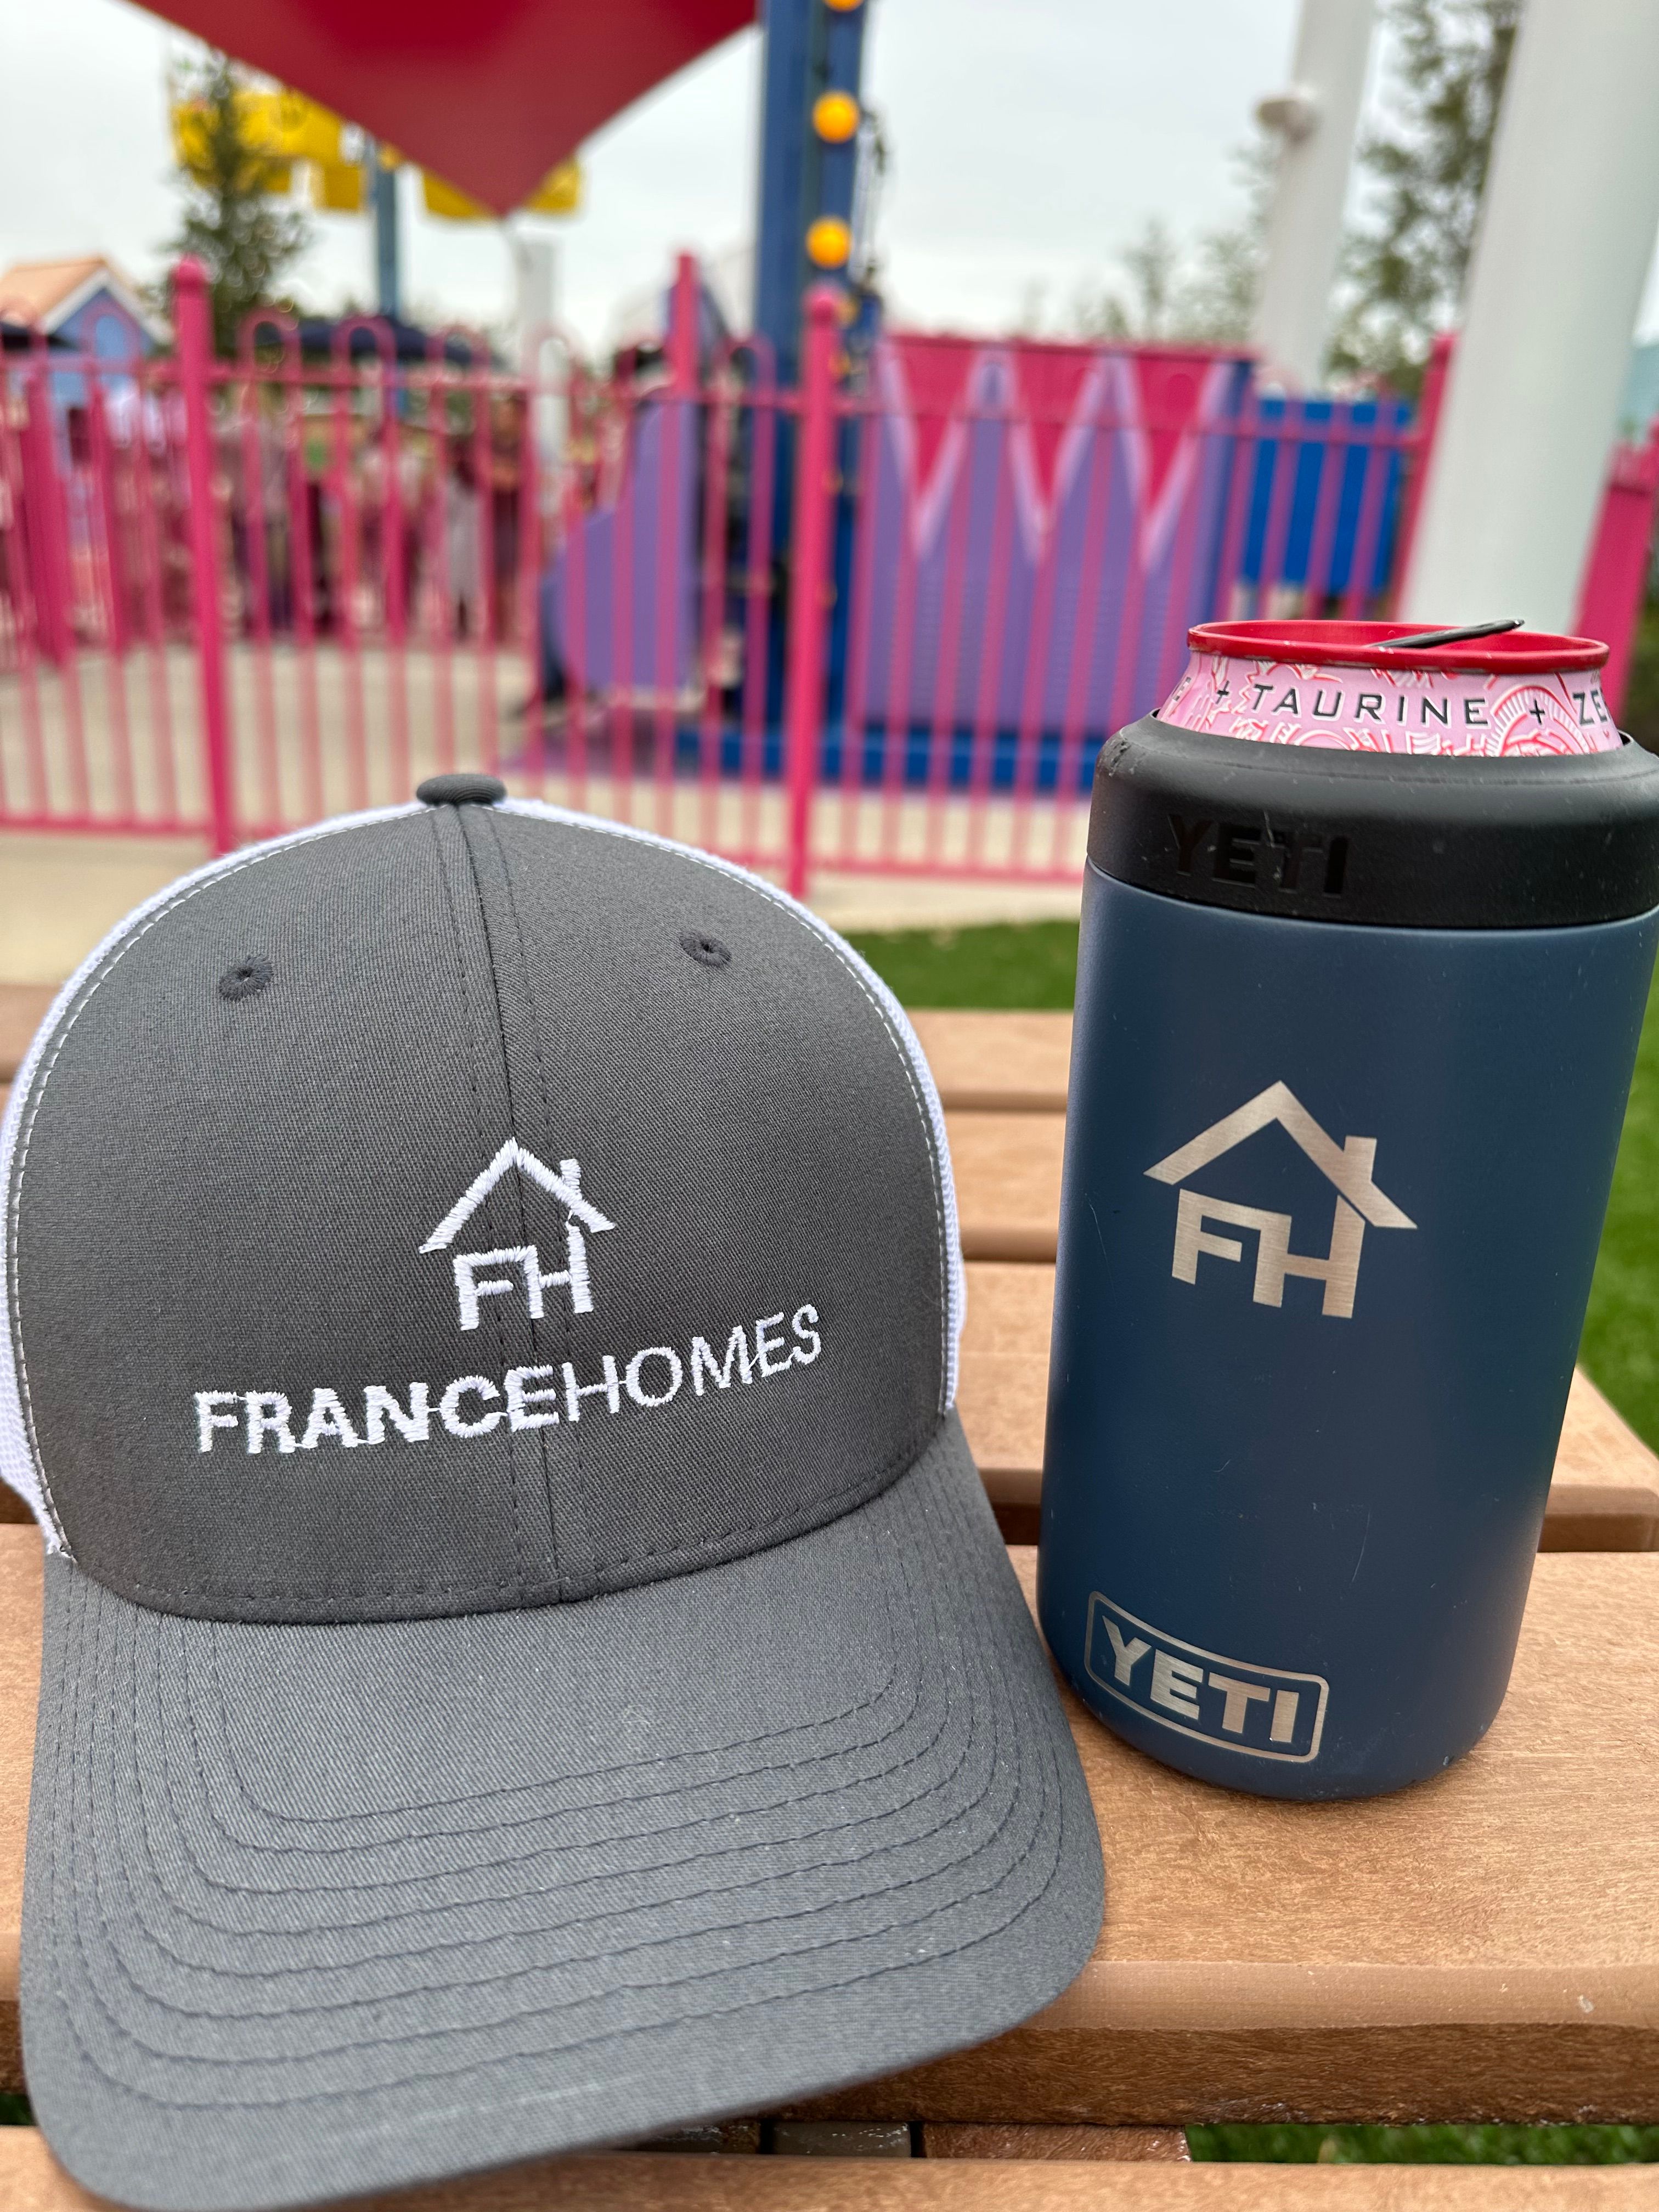  for France Homes  in Sarasota, FL